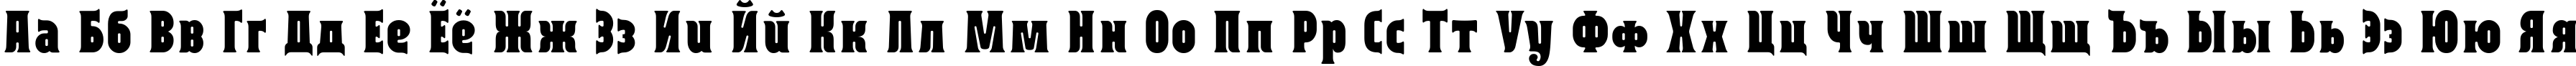 Пример написания русского алфавита шрифтом Capitalist